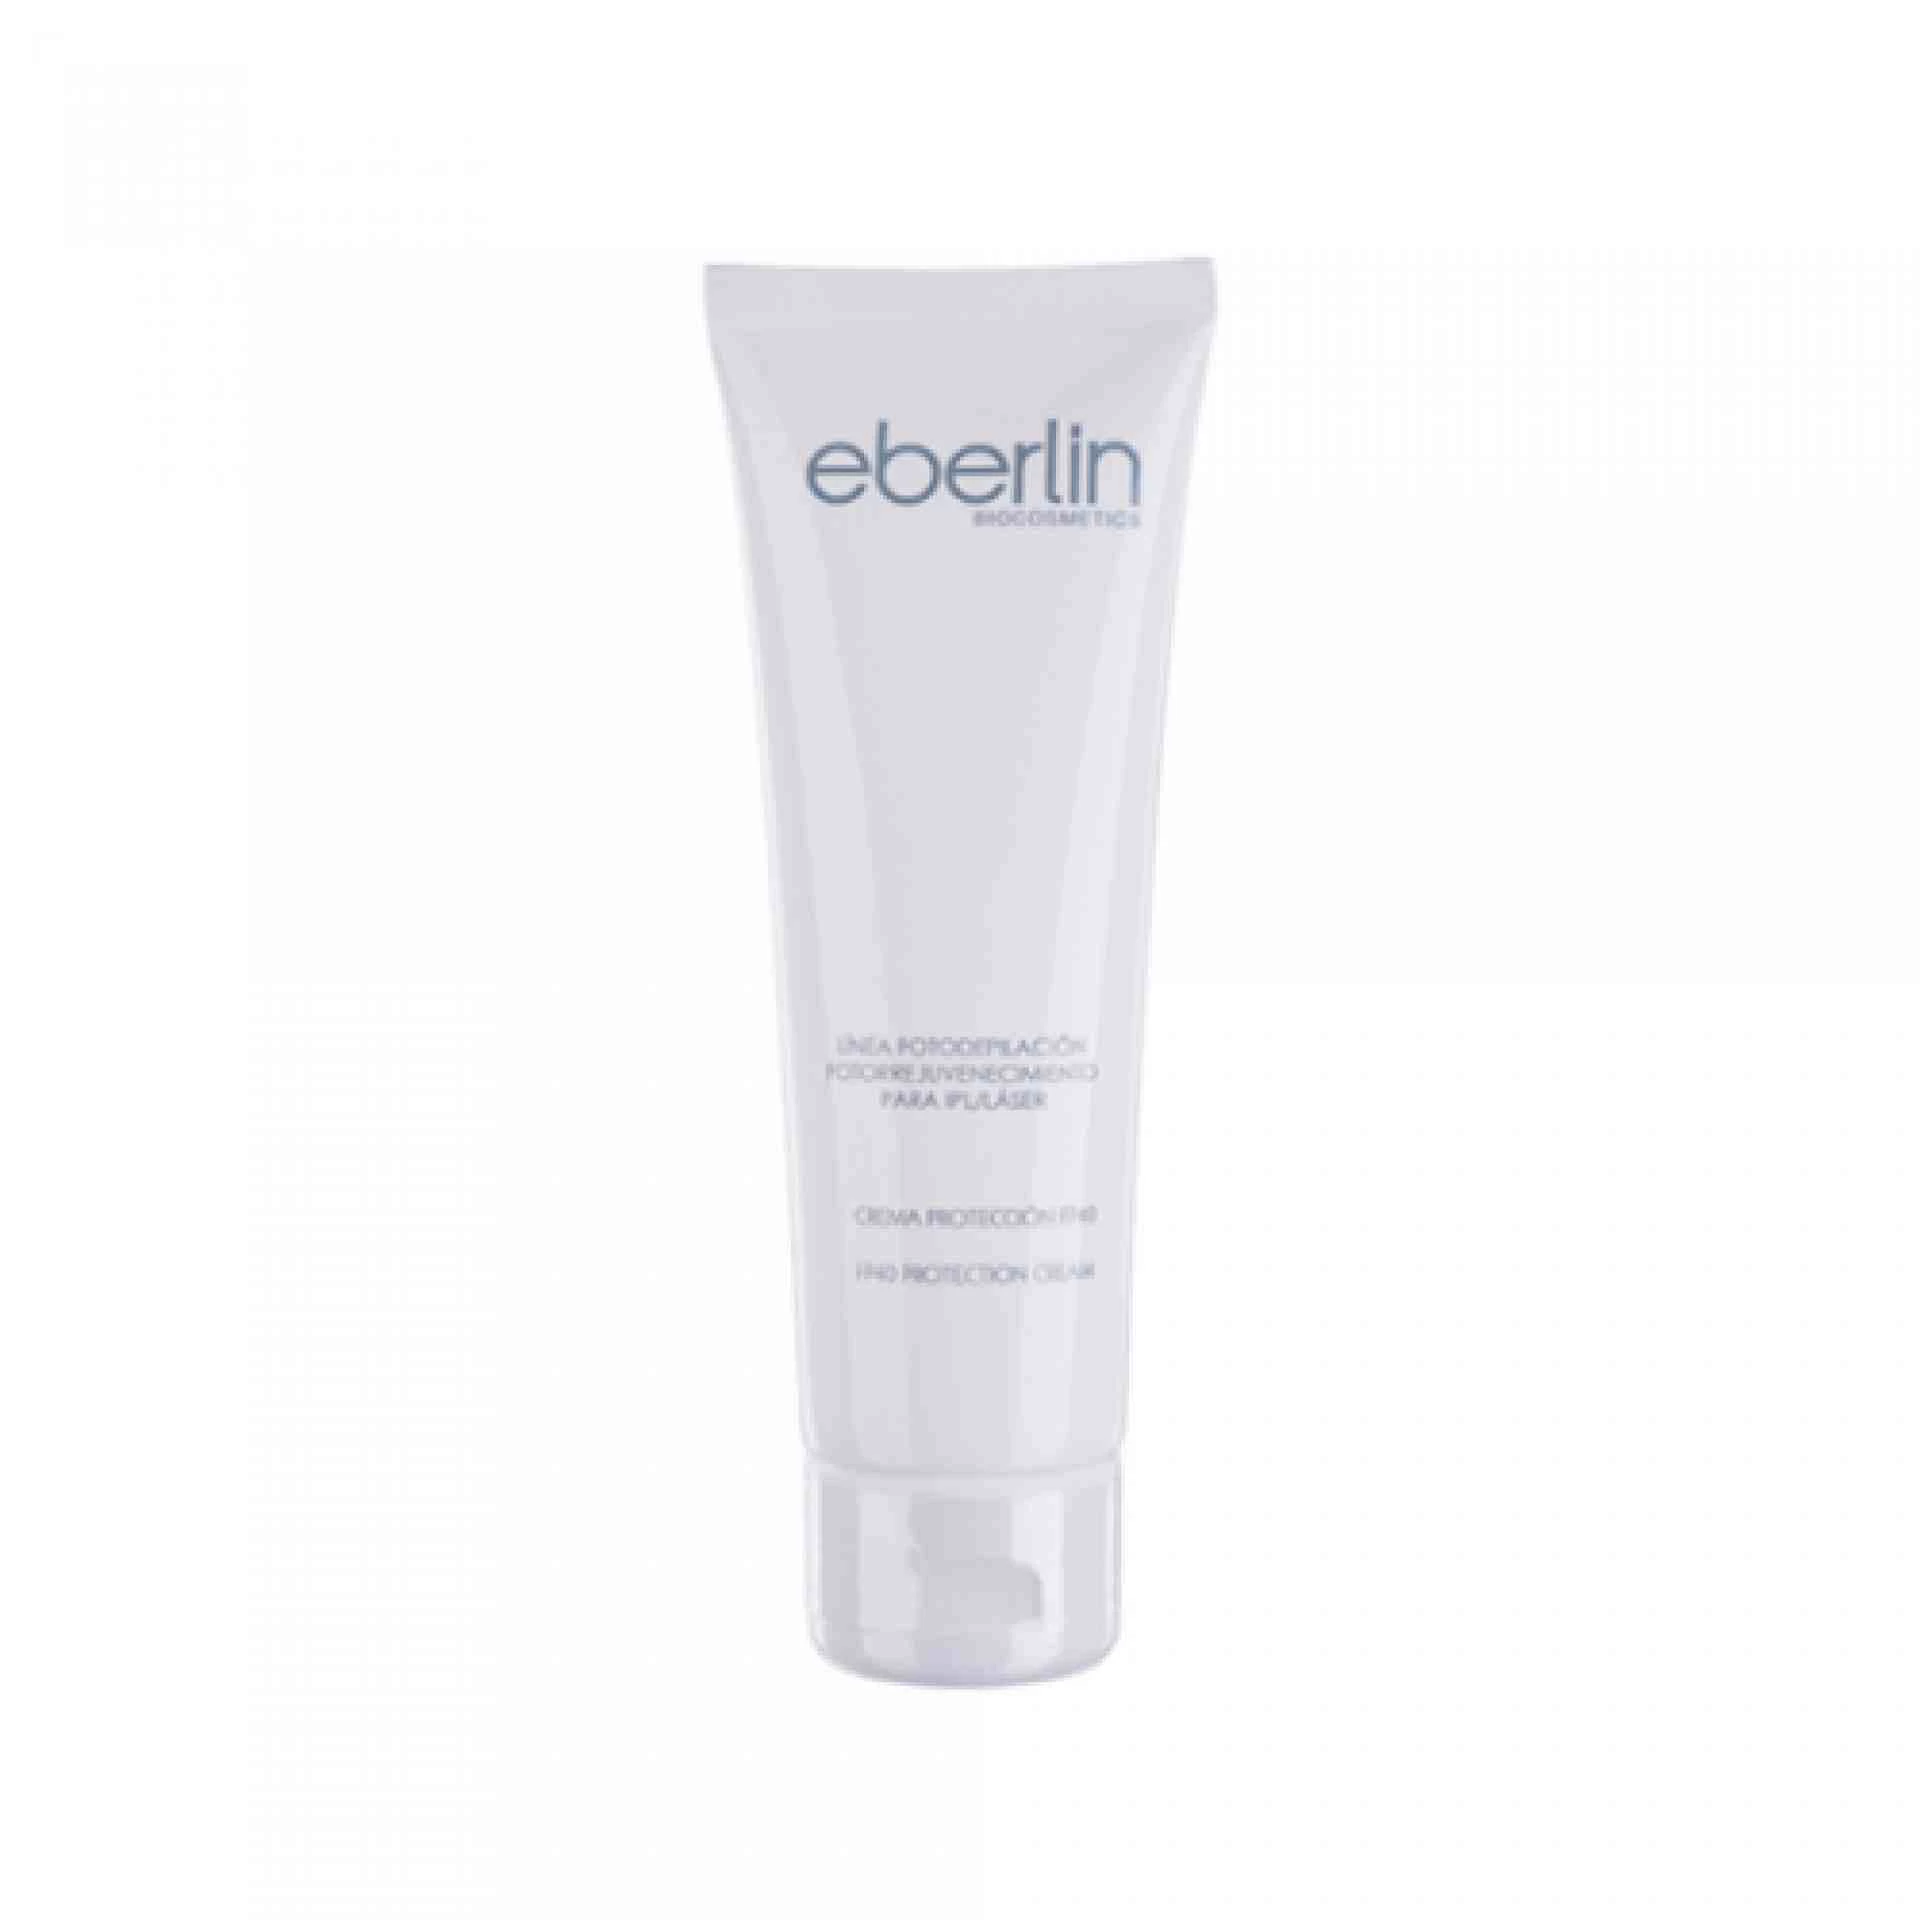 Crema Protección Fotorejuvenecimiento AHA 125ml - Línea Fotodepilación - Eberlin ®